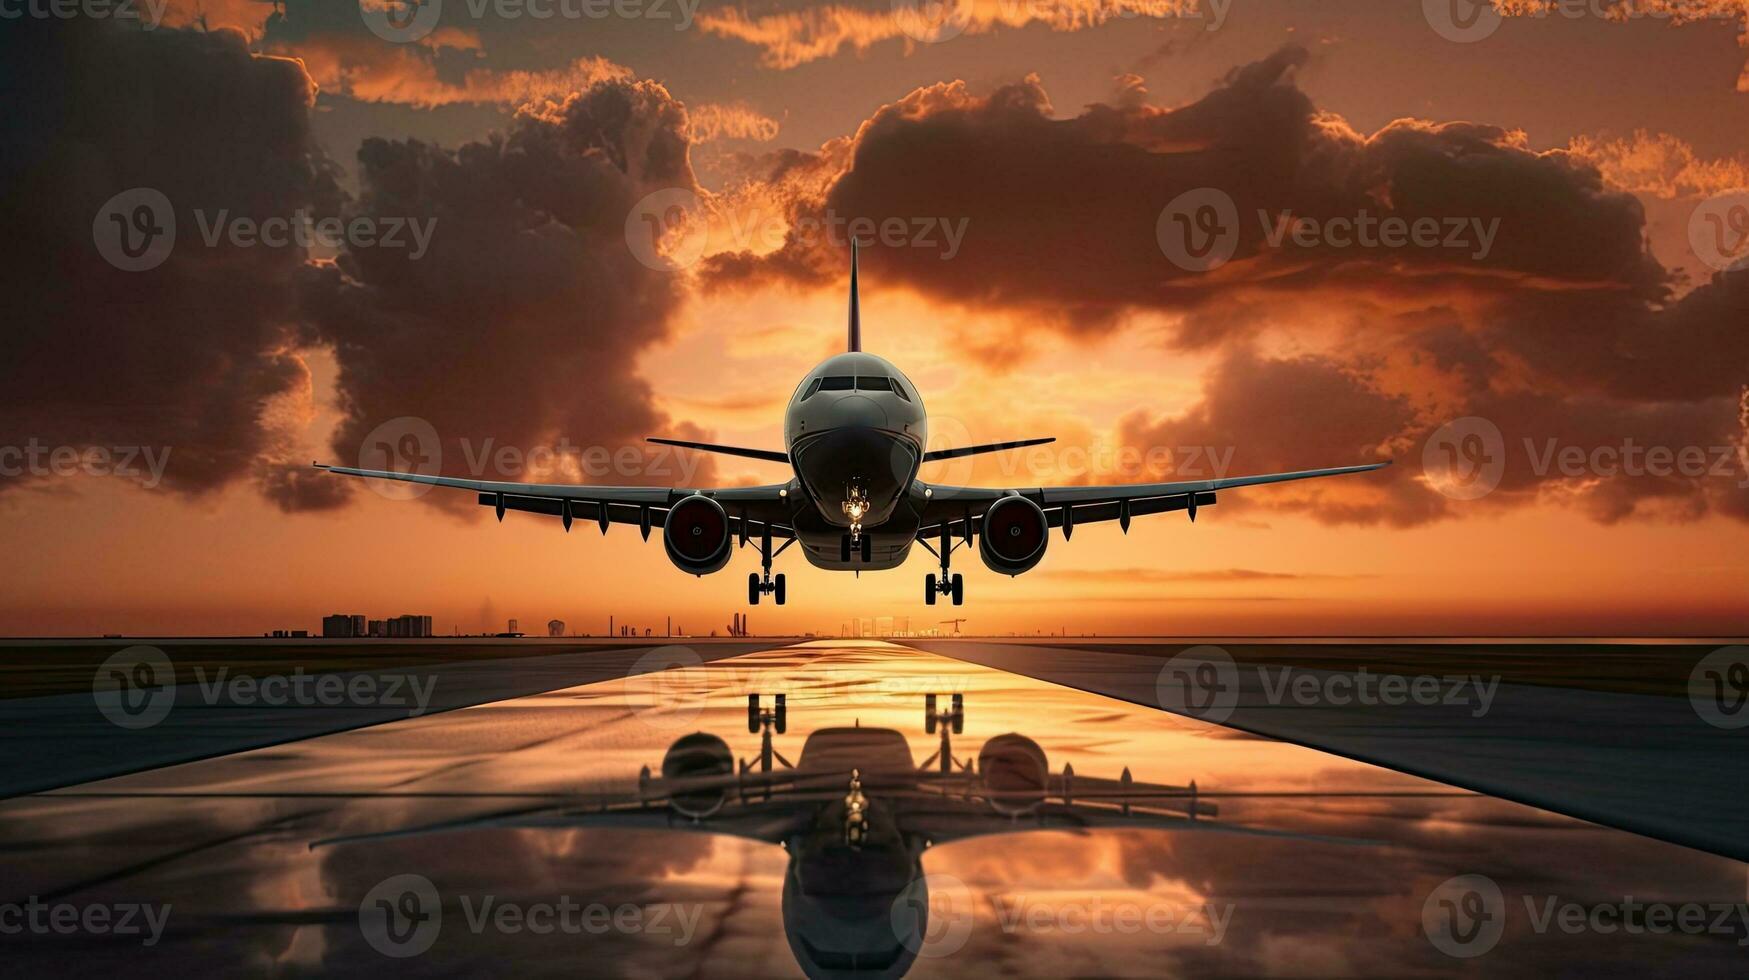 aereo assunzione via e atterraggio a tramonto con nuvoloso cielo foto